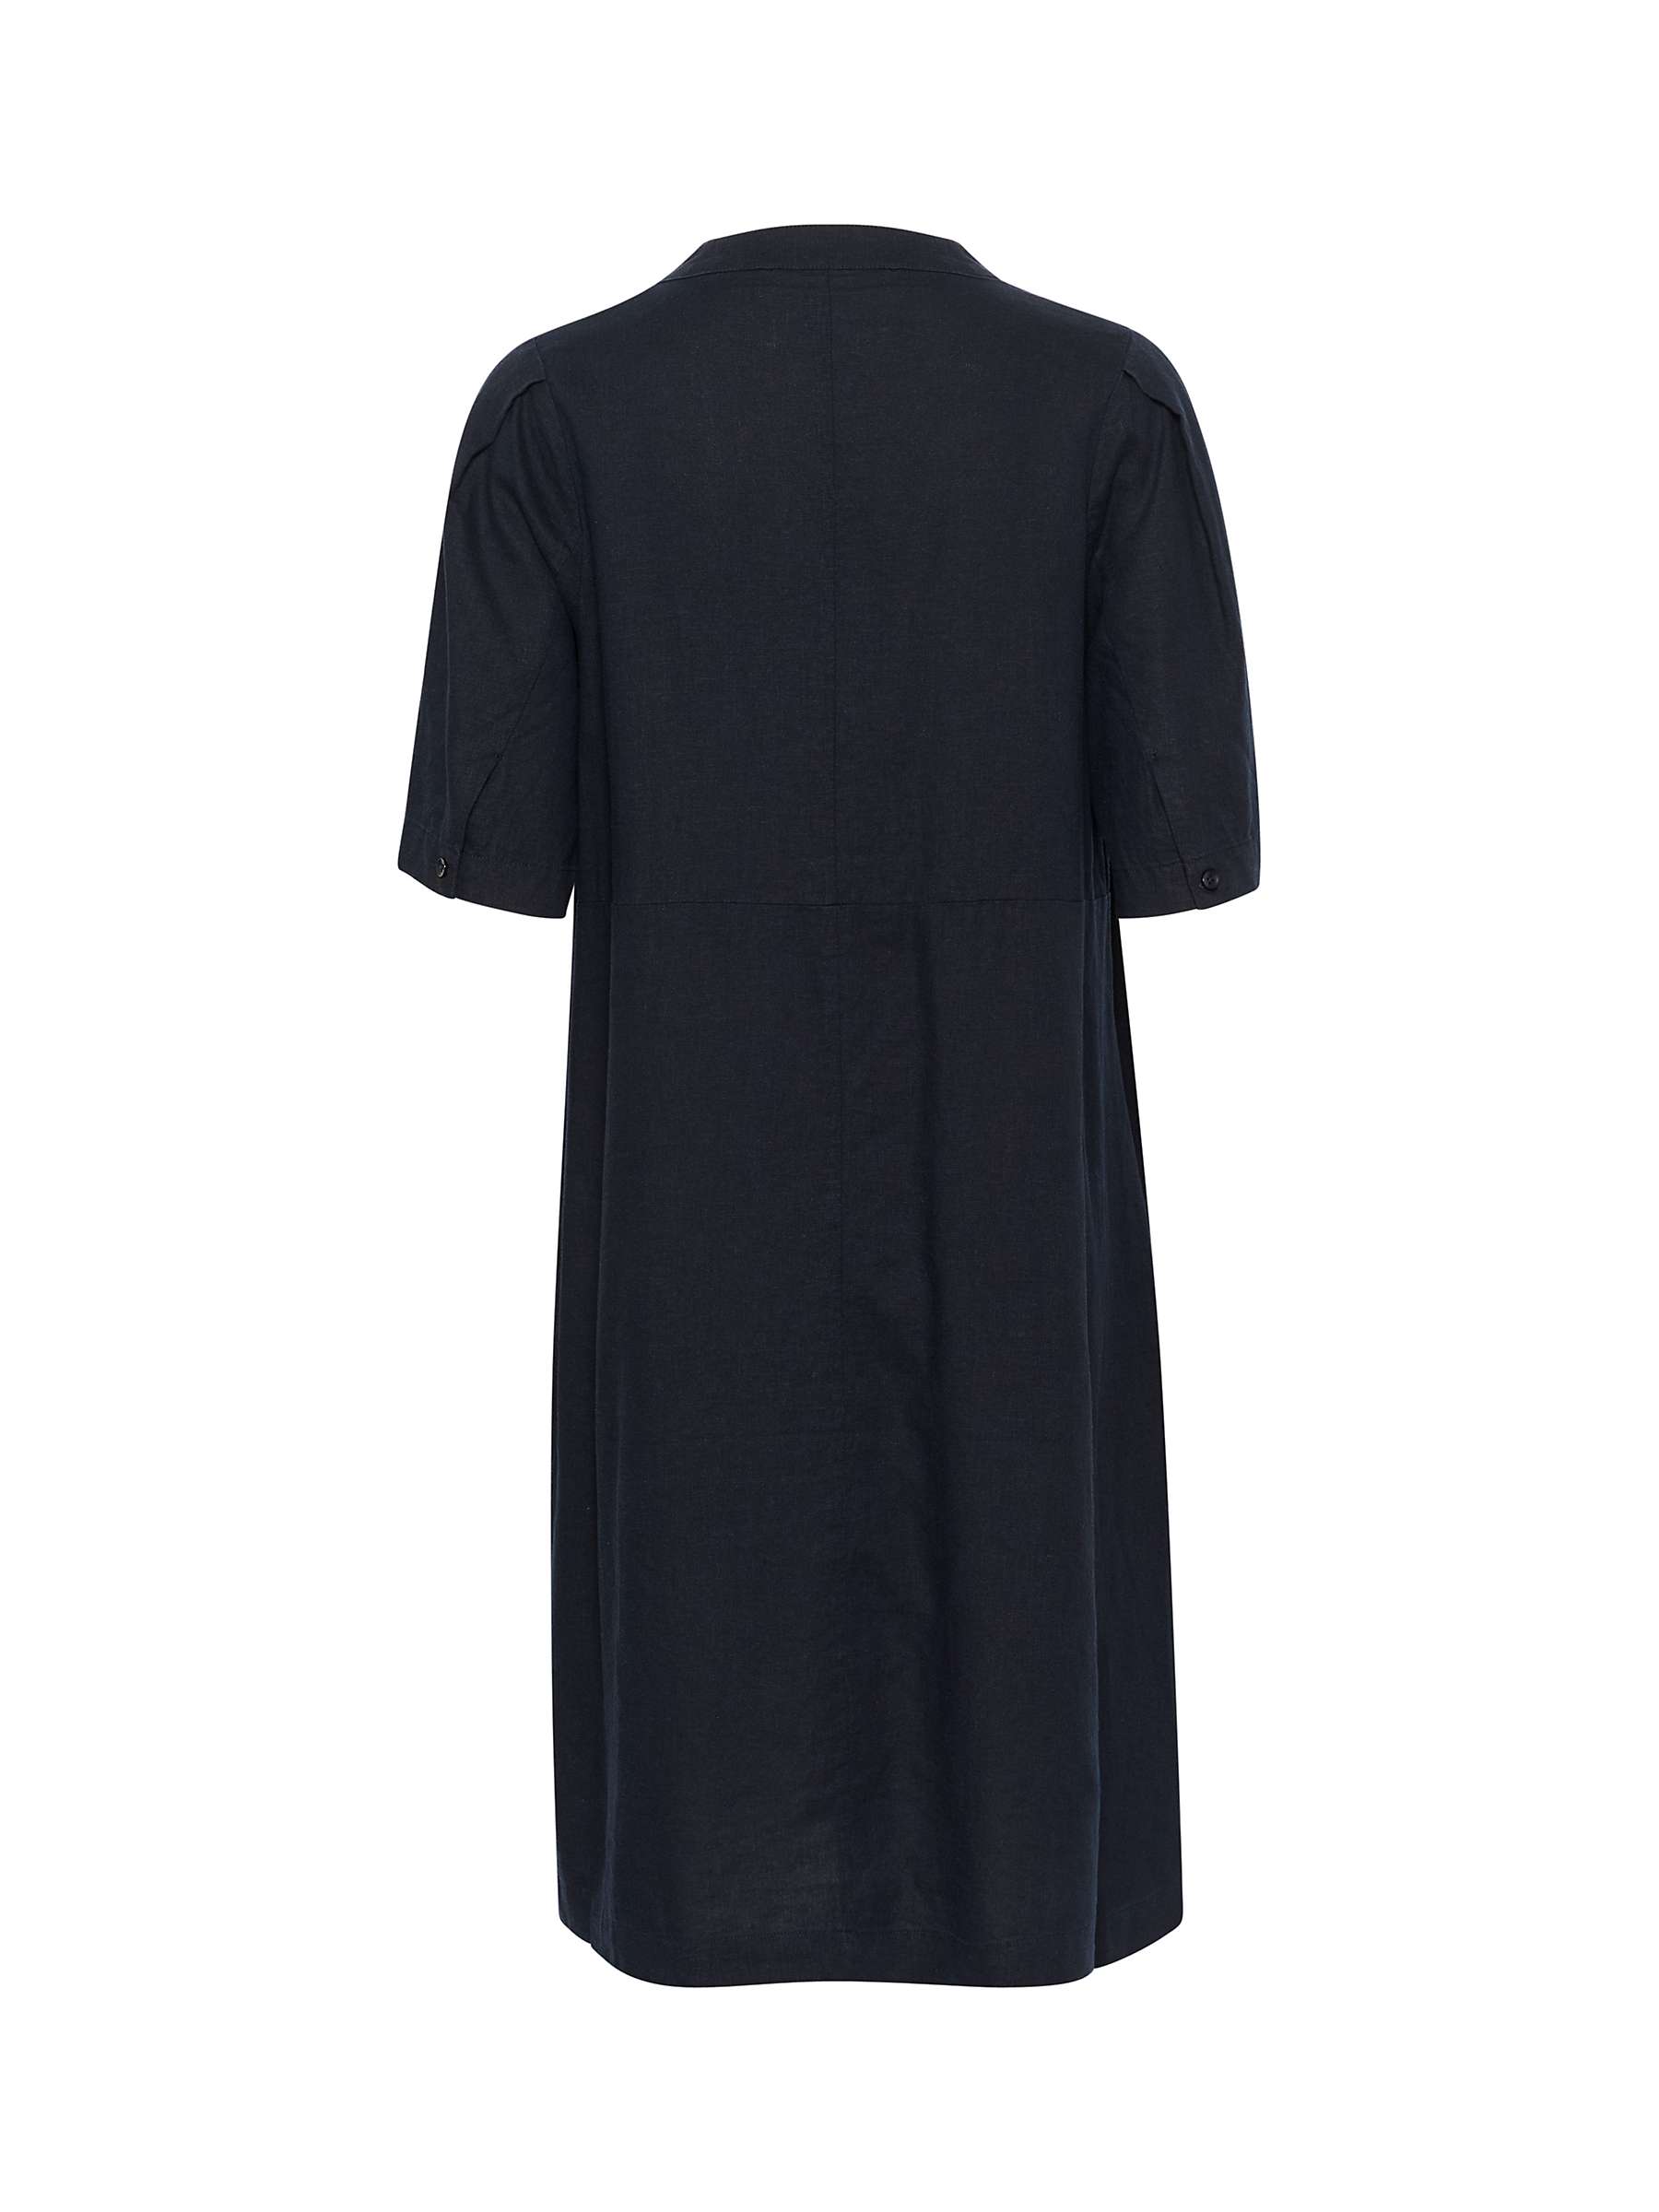 Buy InWear Ellie V-neck Short Sleeve Knee Length Dress, Marine Blue Online at johnlewis.com